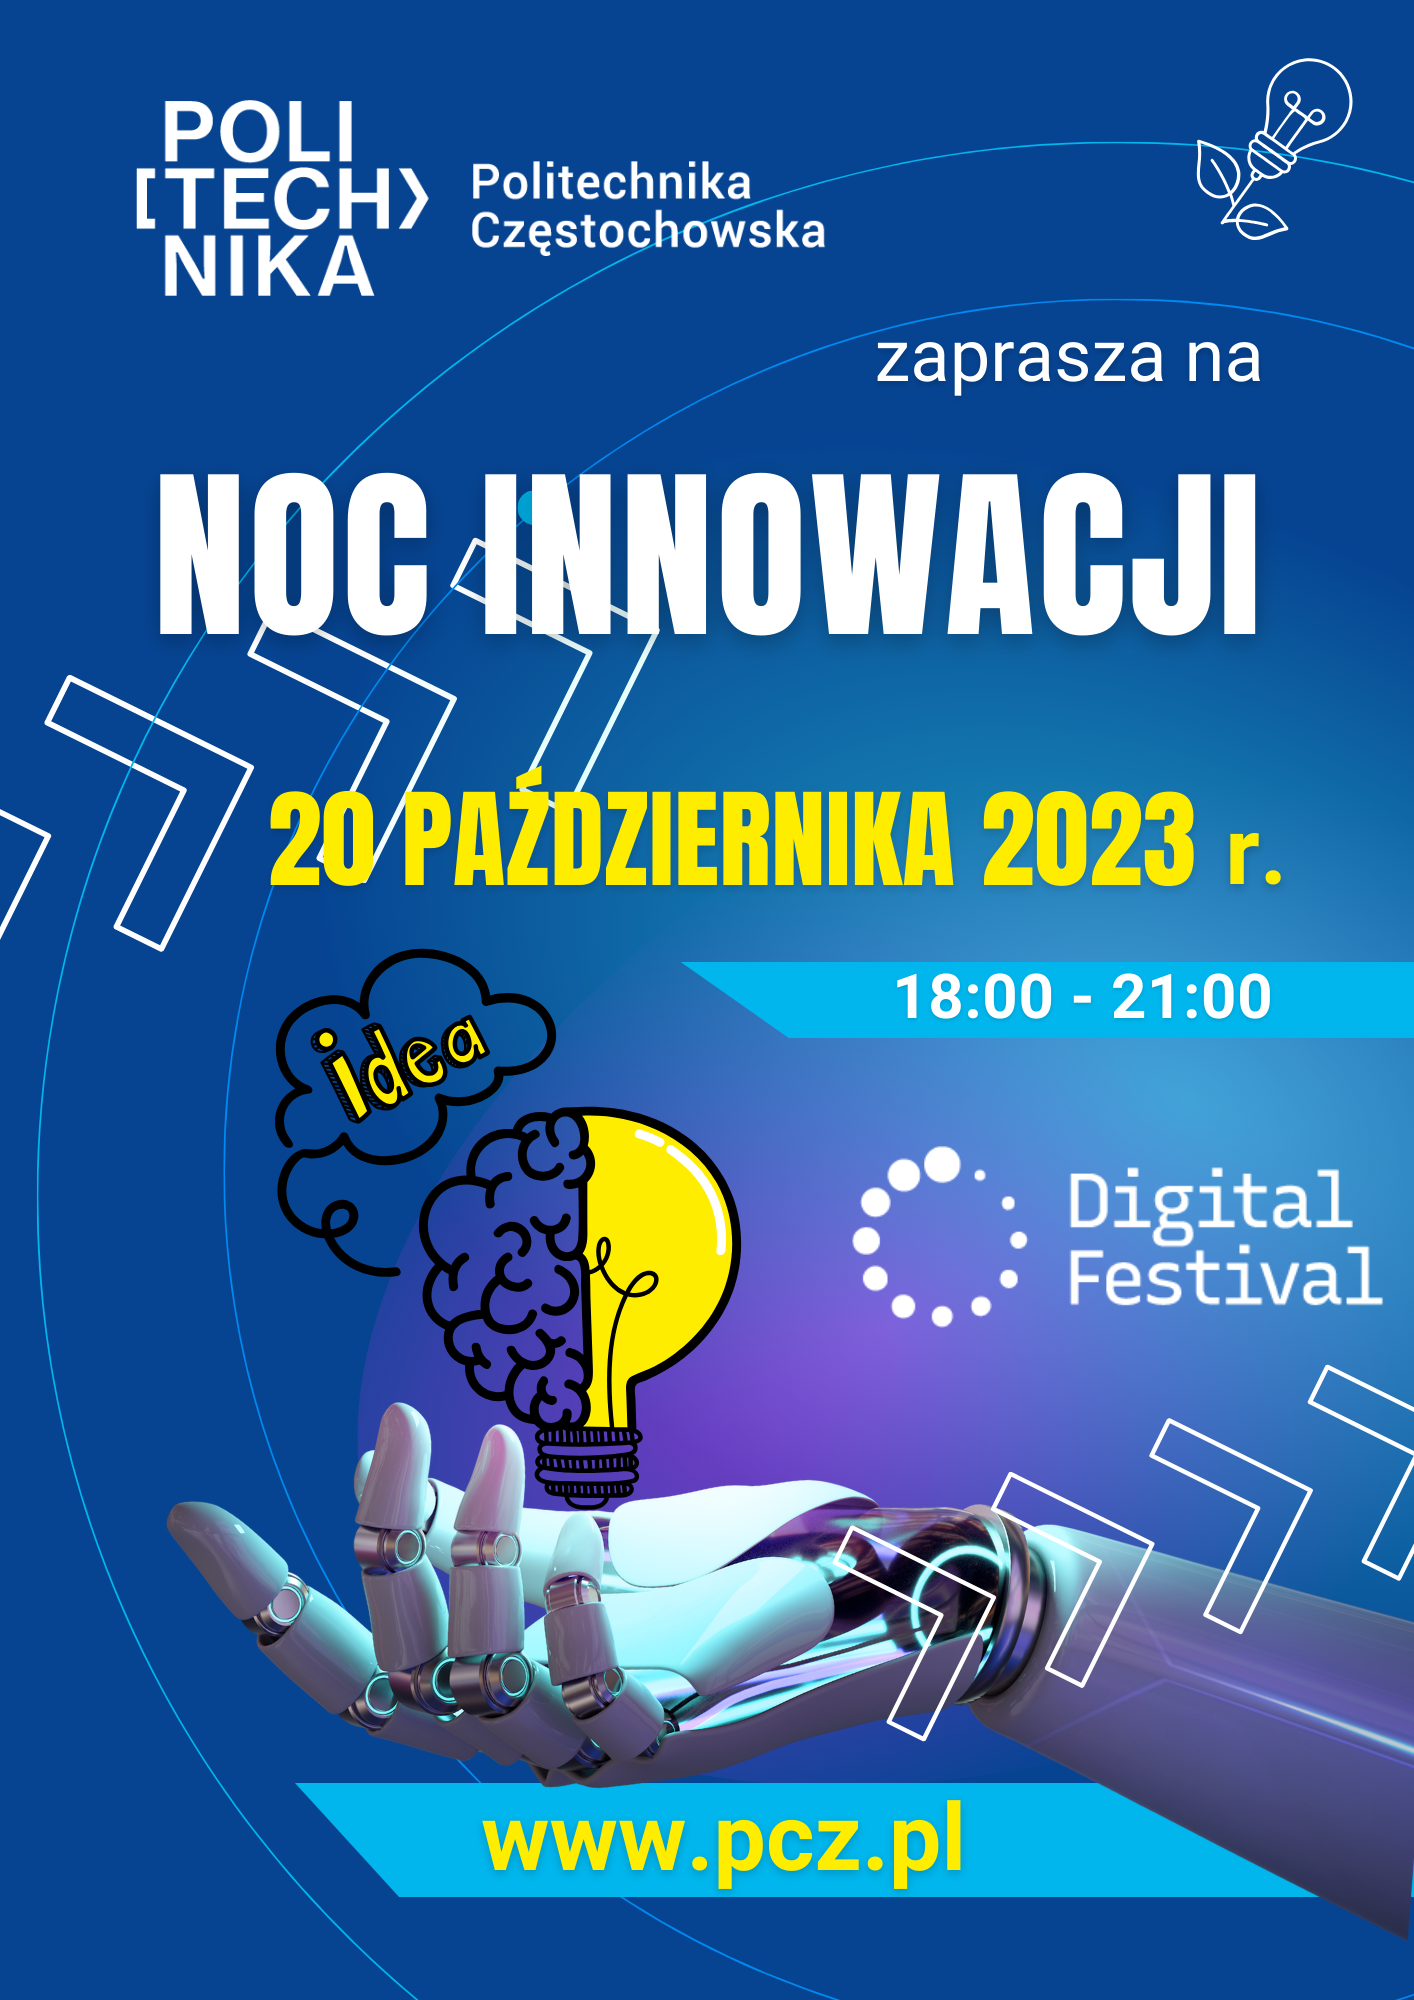 20 października 2023 r. zapraszamy na Politechnikę Częstochowską na NOC INNOWACJI!